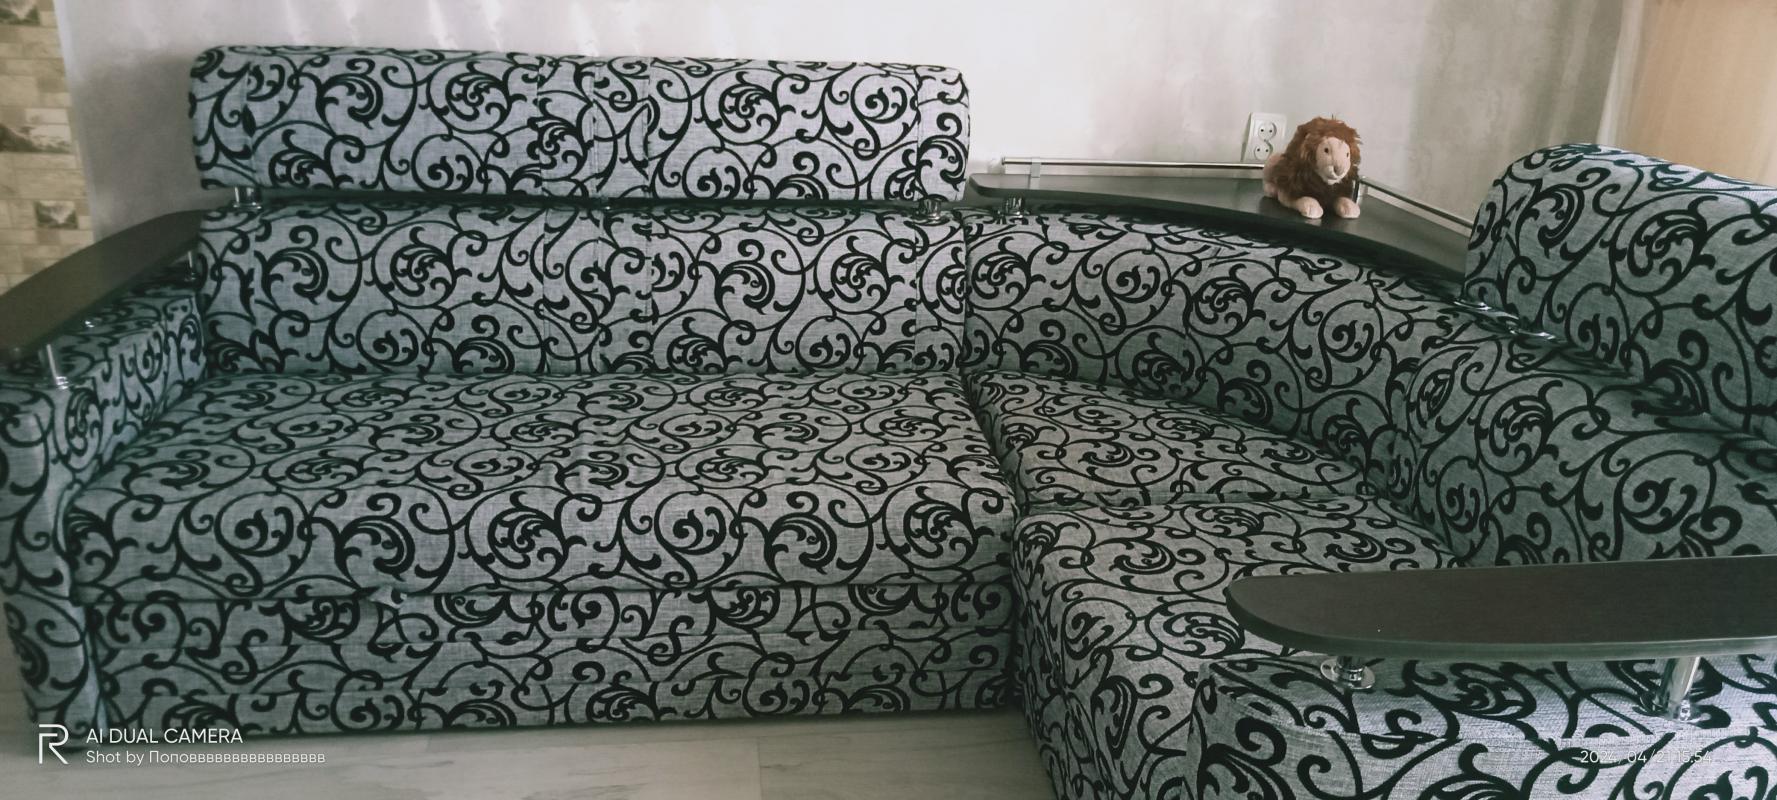 Продам отличный угловой диван, красивая расцветка, имеется место для хранения вещей. - Новотроицк